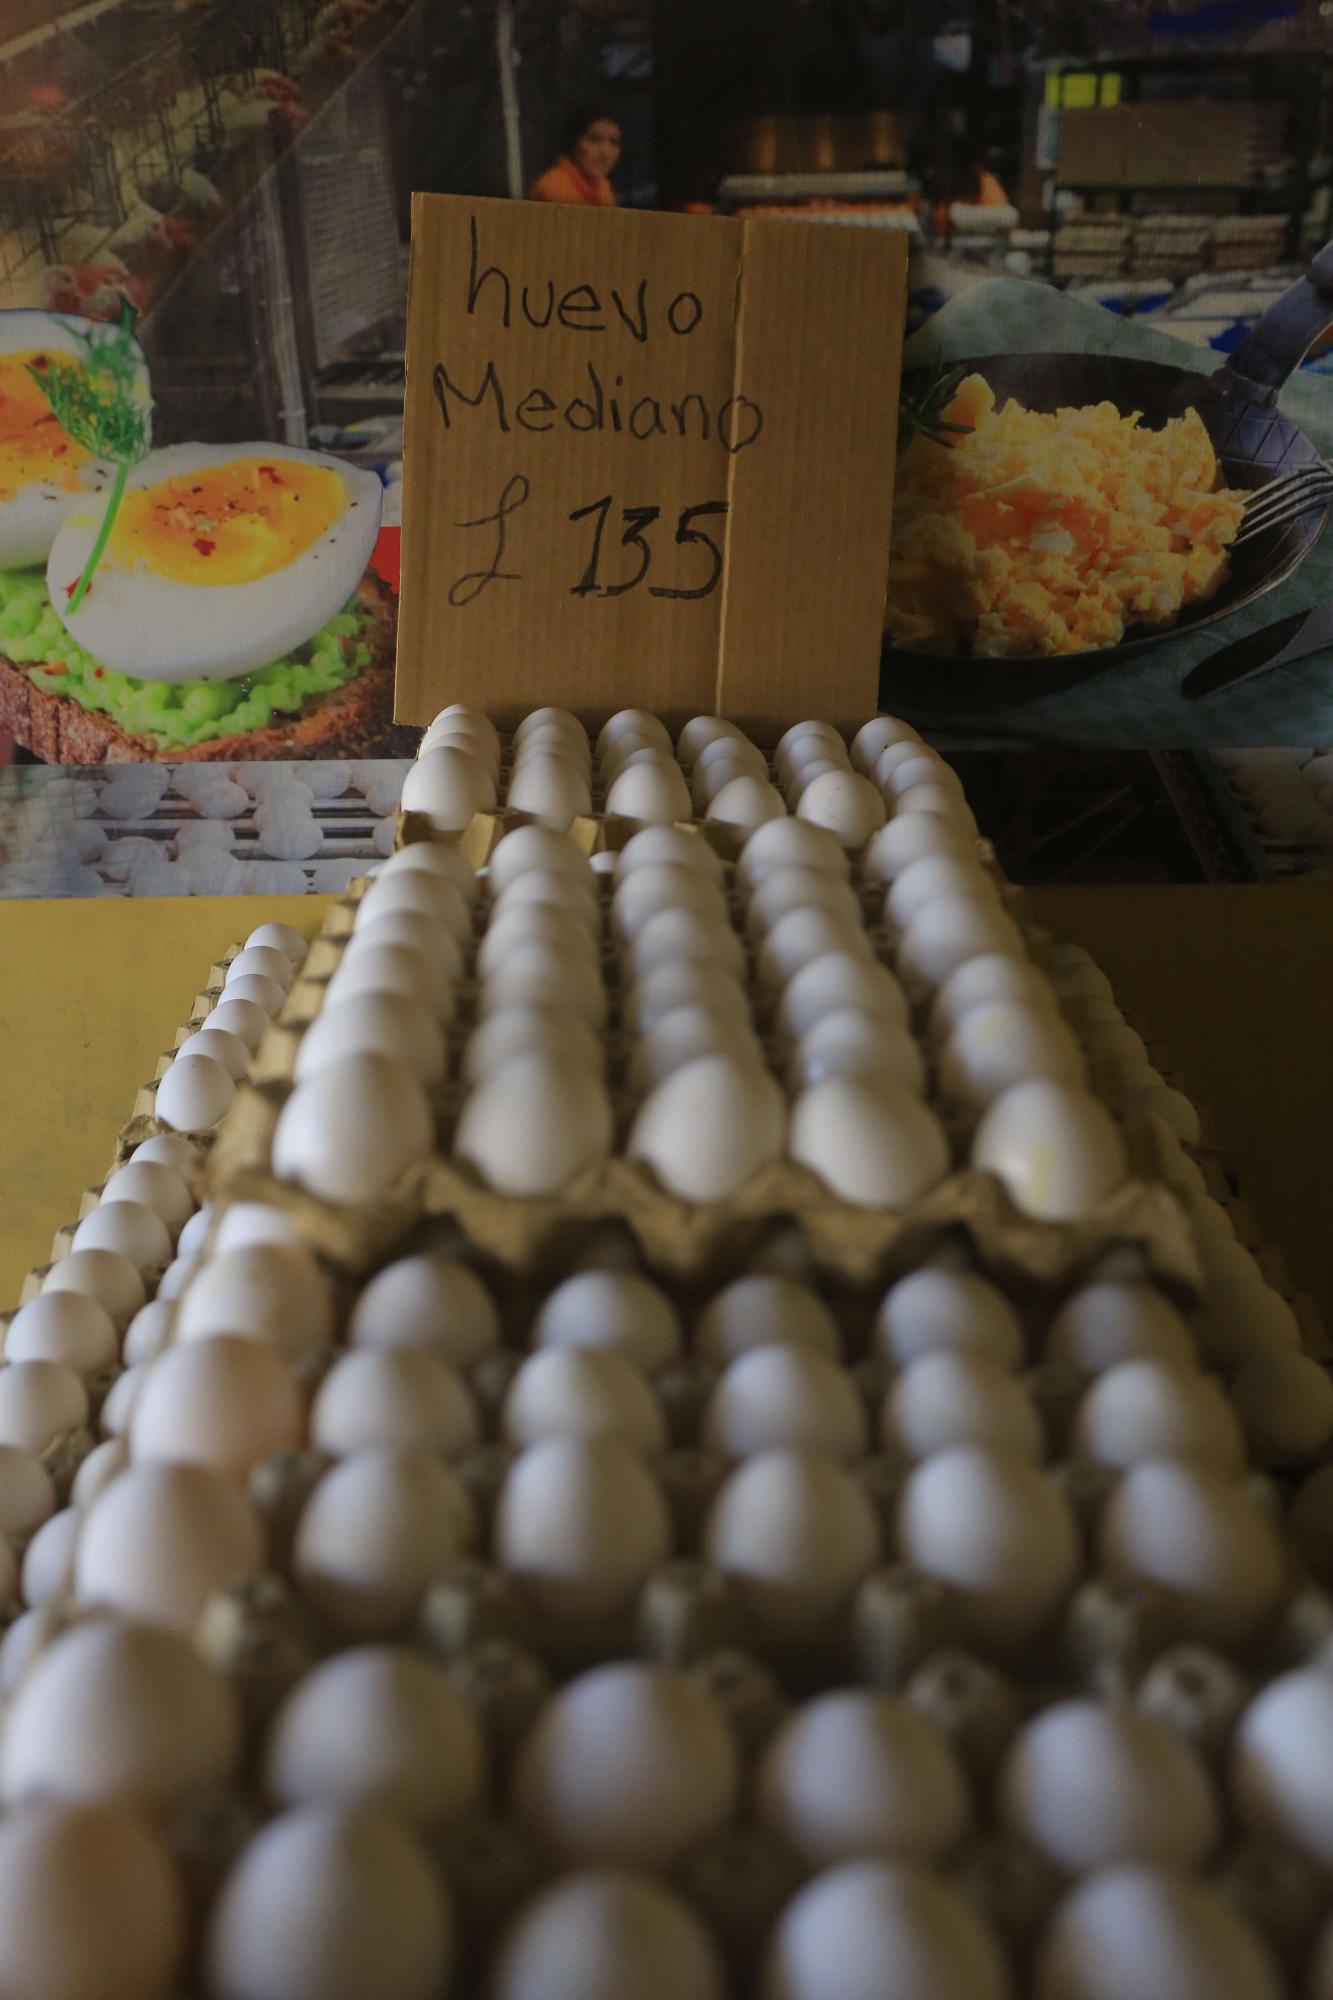 $!Entre L6 y L7.50 siguen costando los huevos en San Pedro Sula